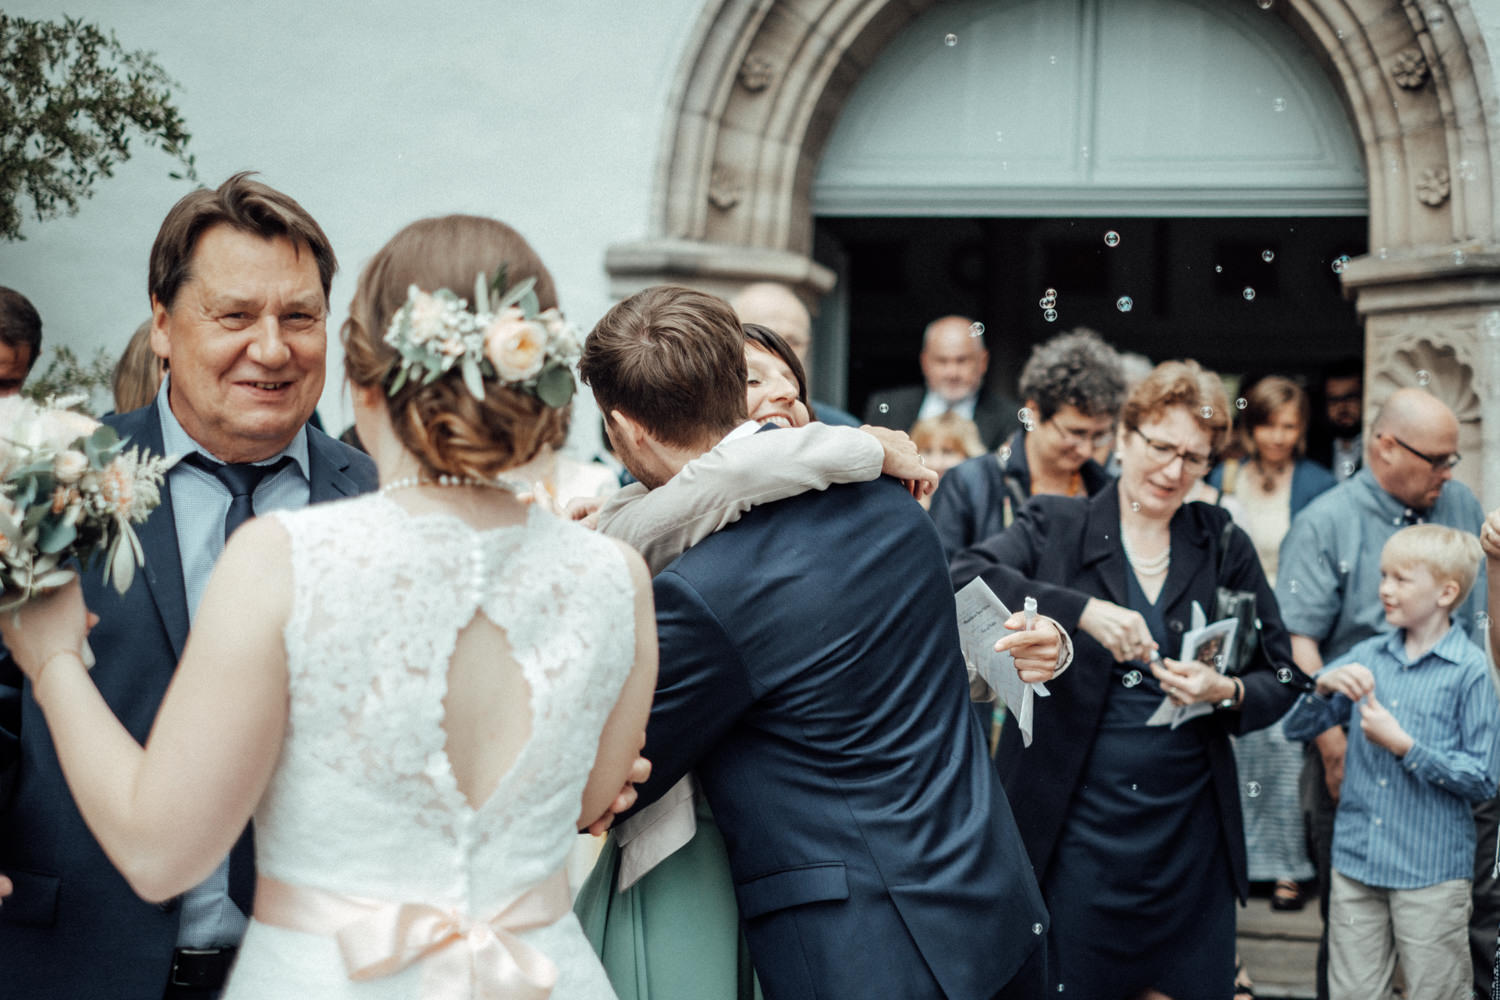 Zelthochzeit-Inspiration-Hochzeitsreportage-natürlich-Hessenhof-Coburg-Oberfranken-Aachen-Hochzeitsfotograf-Kevin Biberbach-KEVIN Fotografie-Junebug-Hochzeitswahn-064.jpg